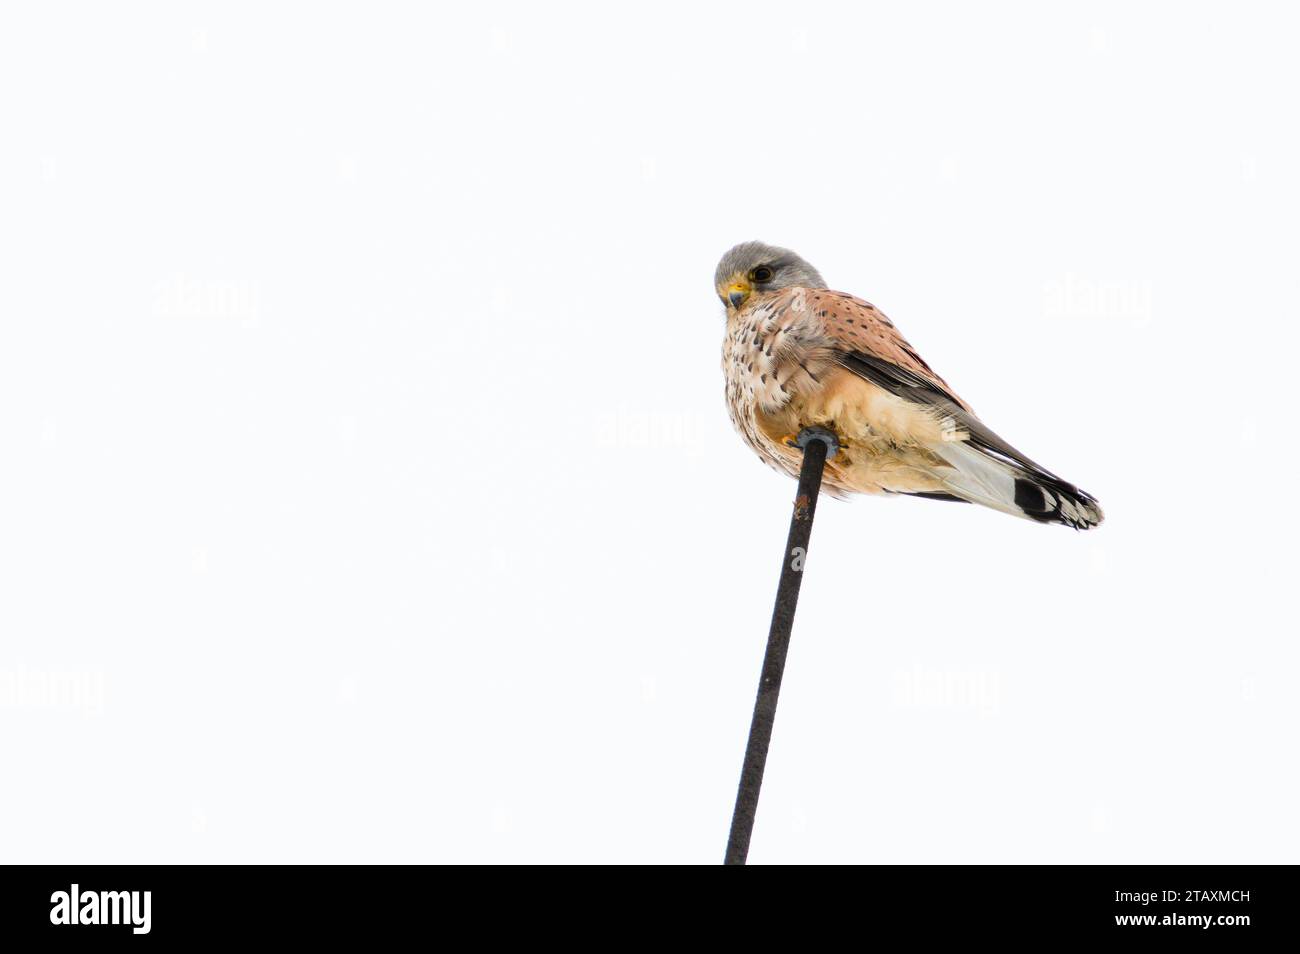 Falco tinnunculus aka Common Kestrel est assis sur le dessus de l'immeuble résidentiel en hiver. Très bel oiseau de proie coloré de république tchèque. Banque D'Images